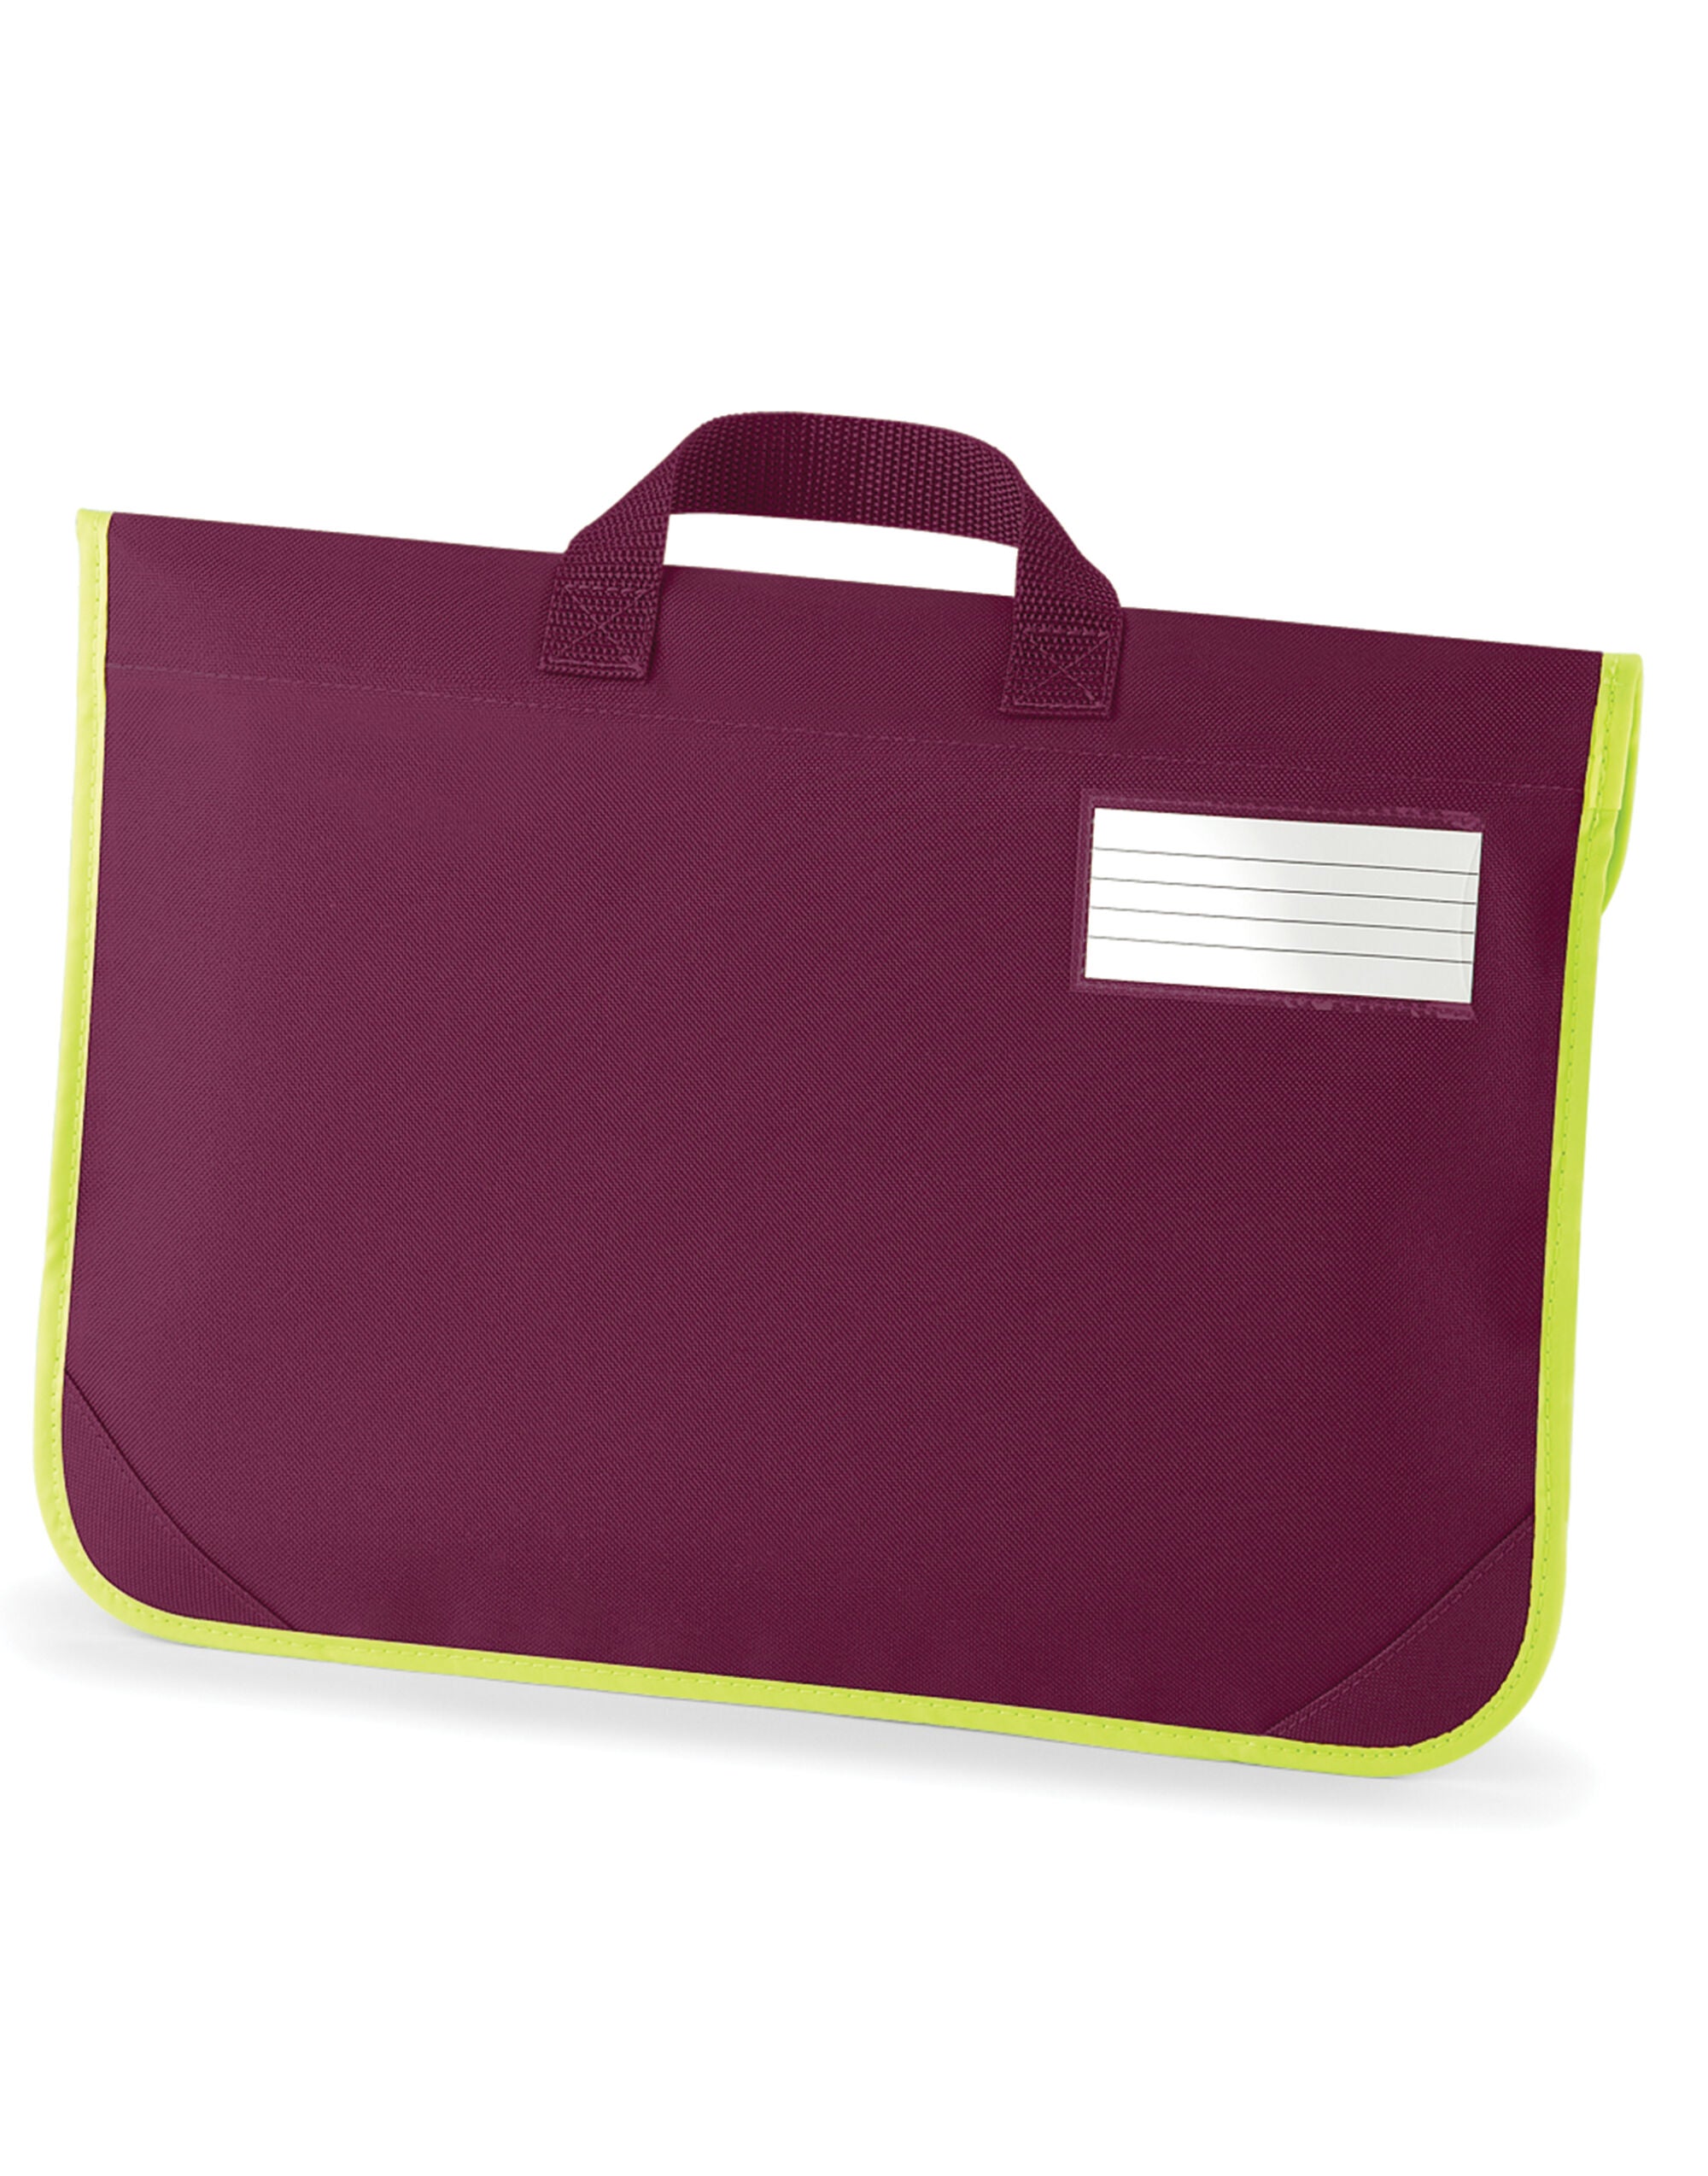 Quadra Enhanced-Viz Book Bag Enhanced visibility reflective panel (QD452)